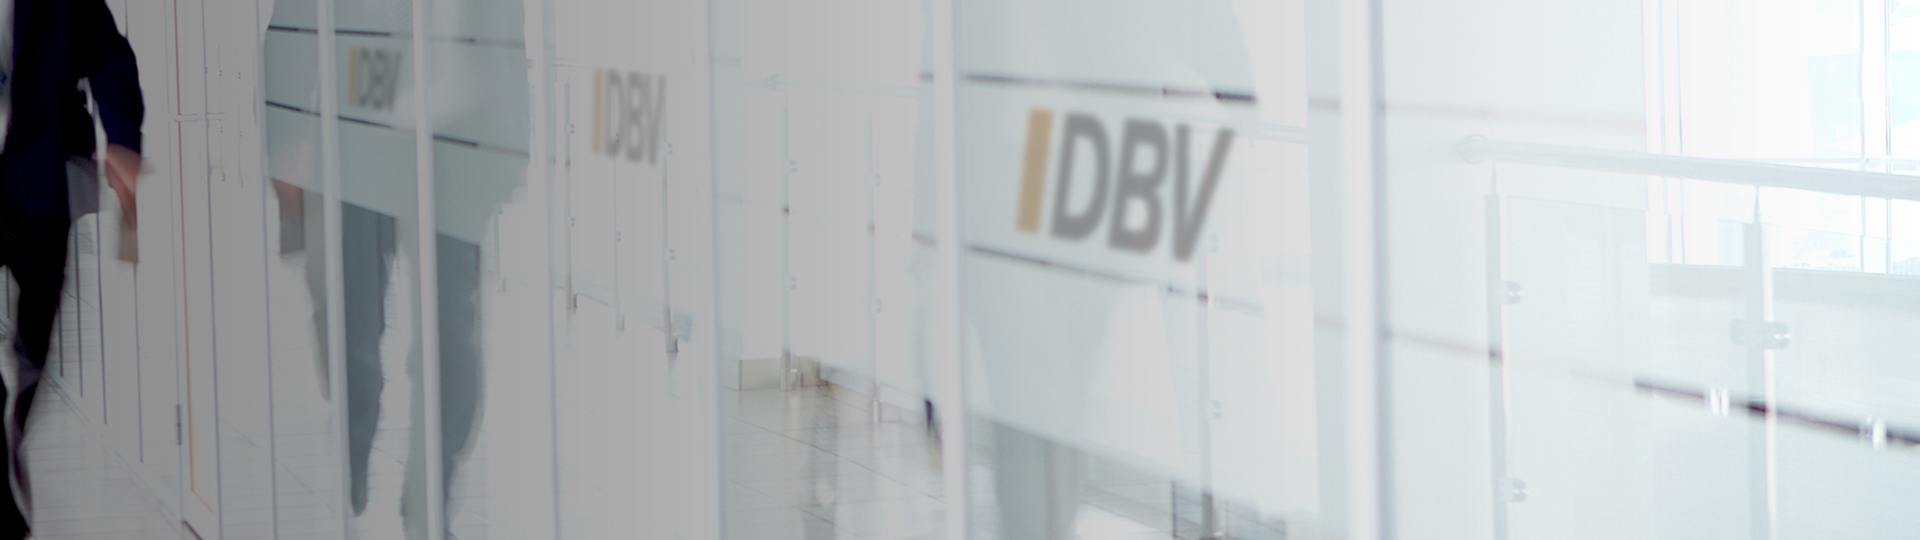 Dienstunfähigkeitsversicherung | DBV Bamberg Kremer OHG 